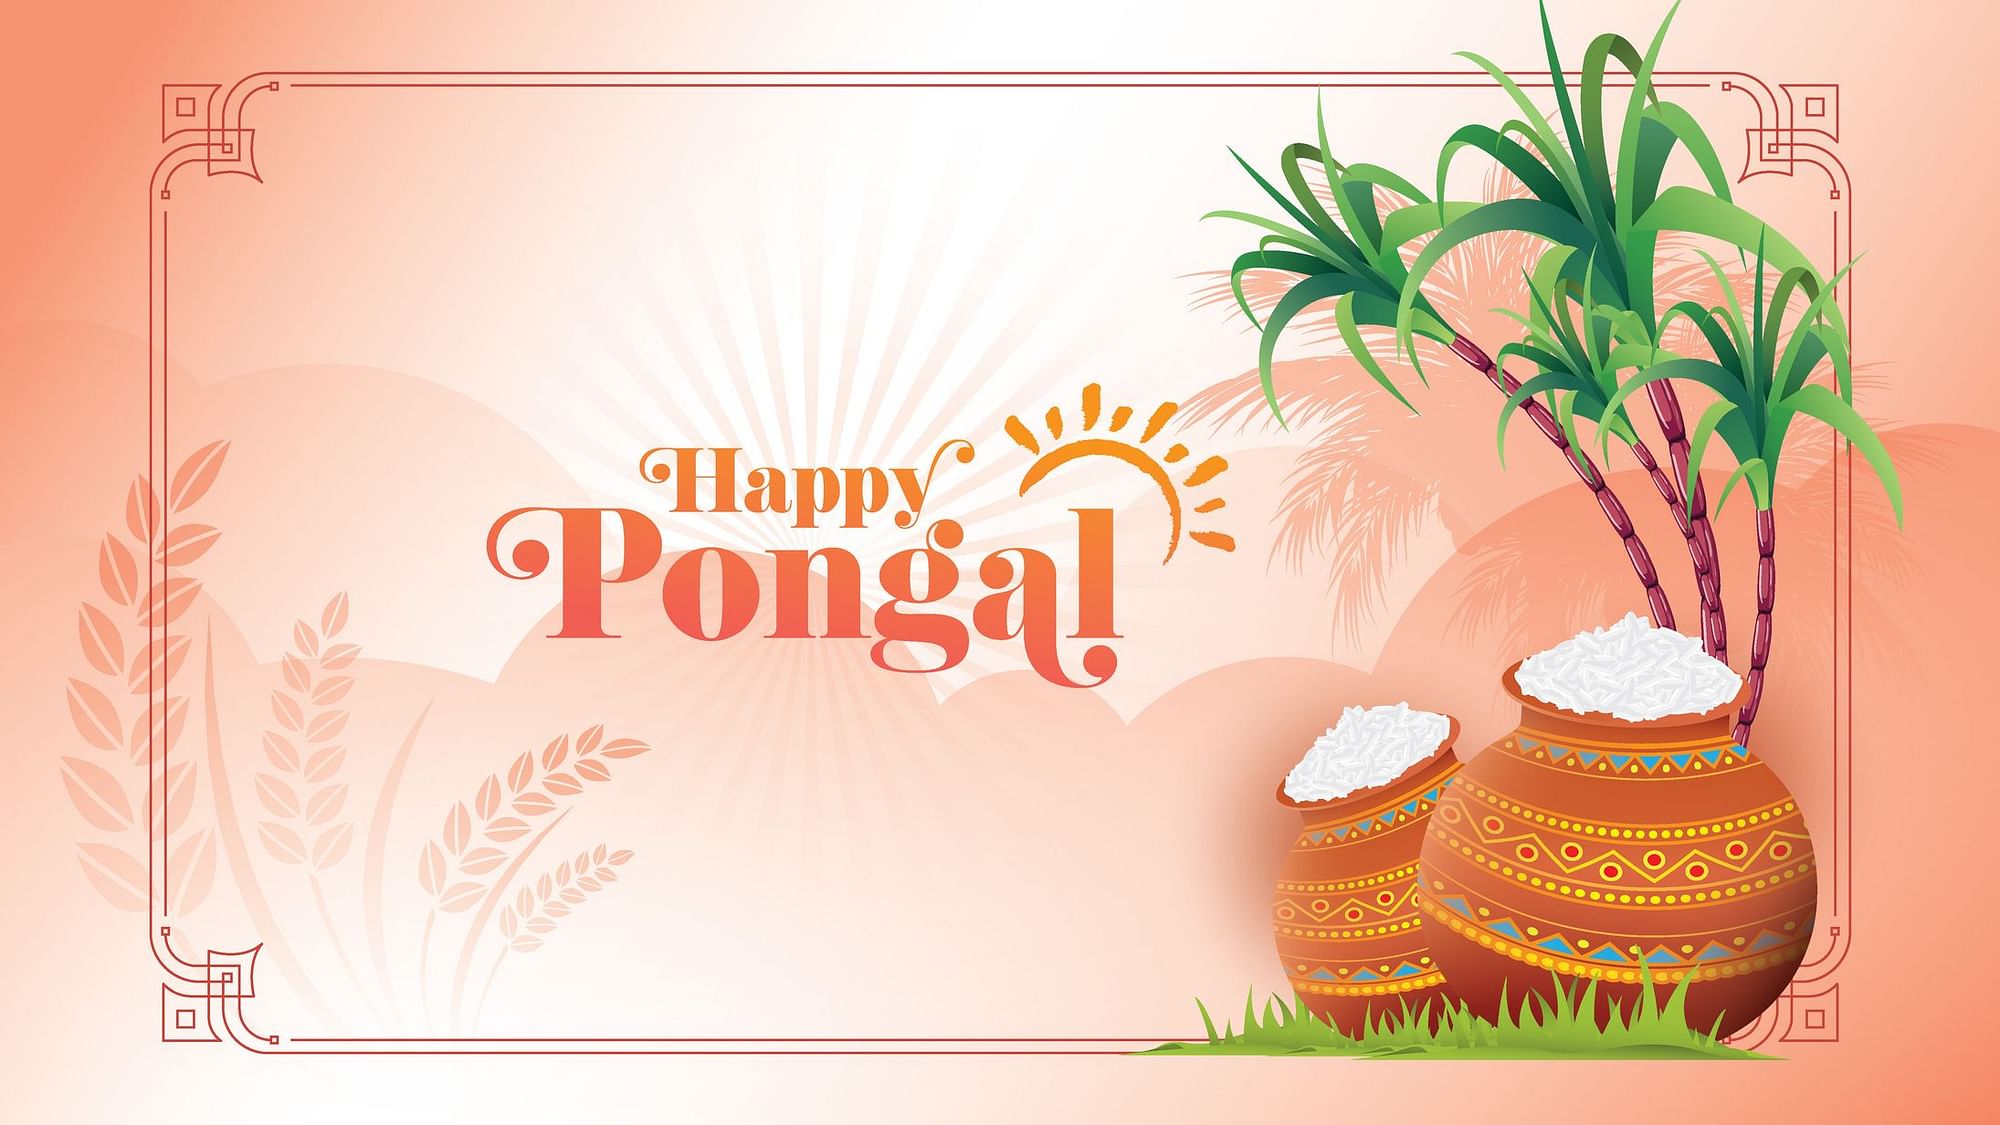 Happy Pongal 2021: पोंगल पर अपने दोस्तों को भेजें ये बधाई संदेश